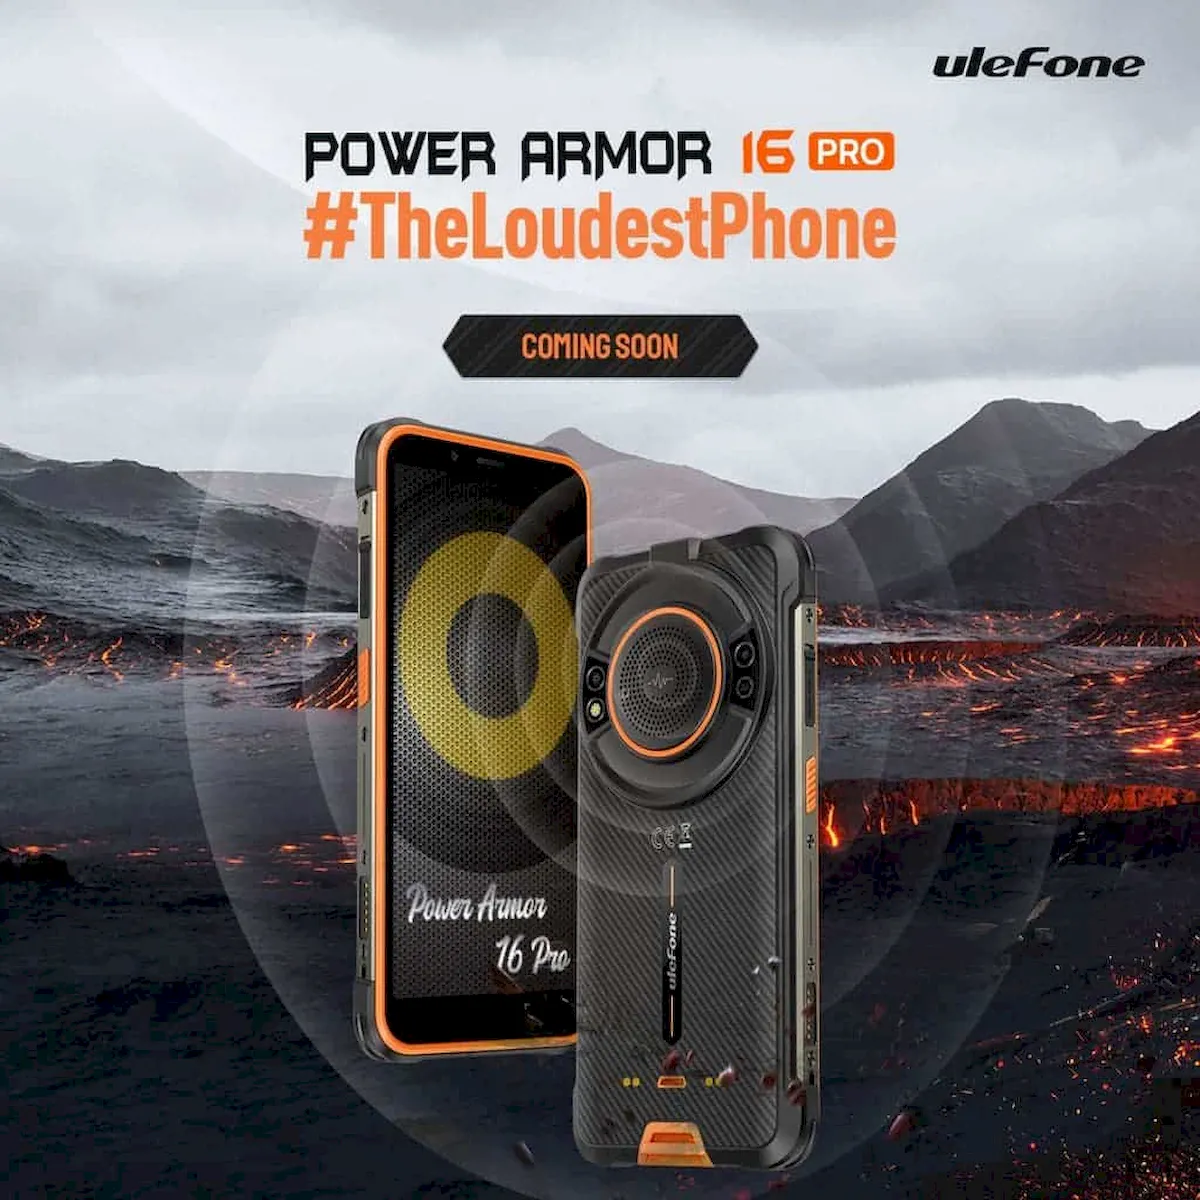 Power Armor 16 Pro Giveaway apareceu no site oficial da Ulefone